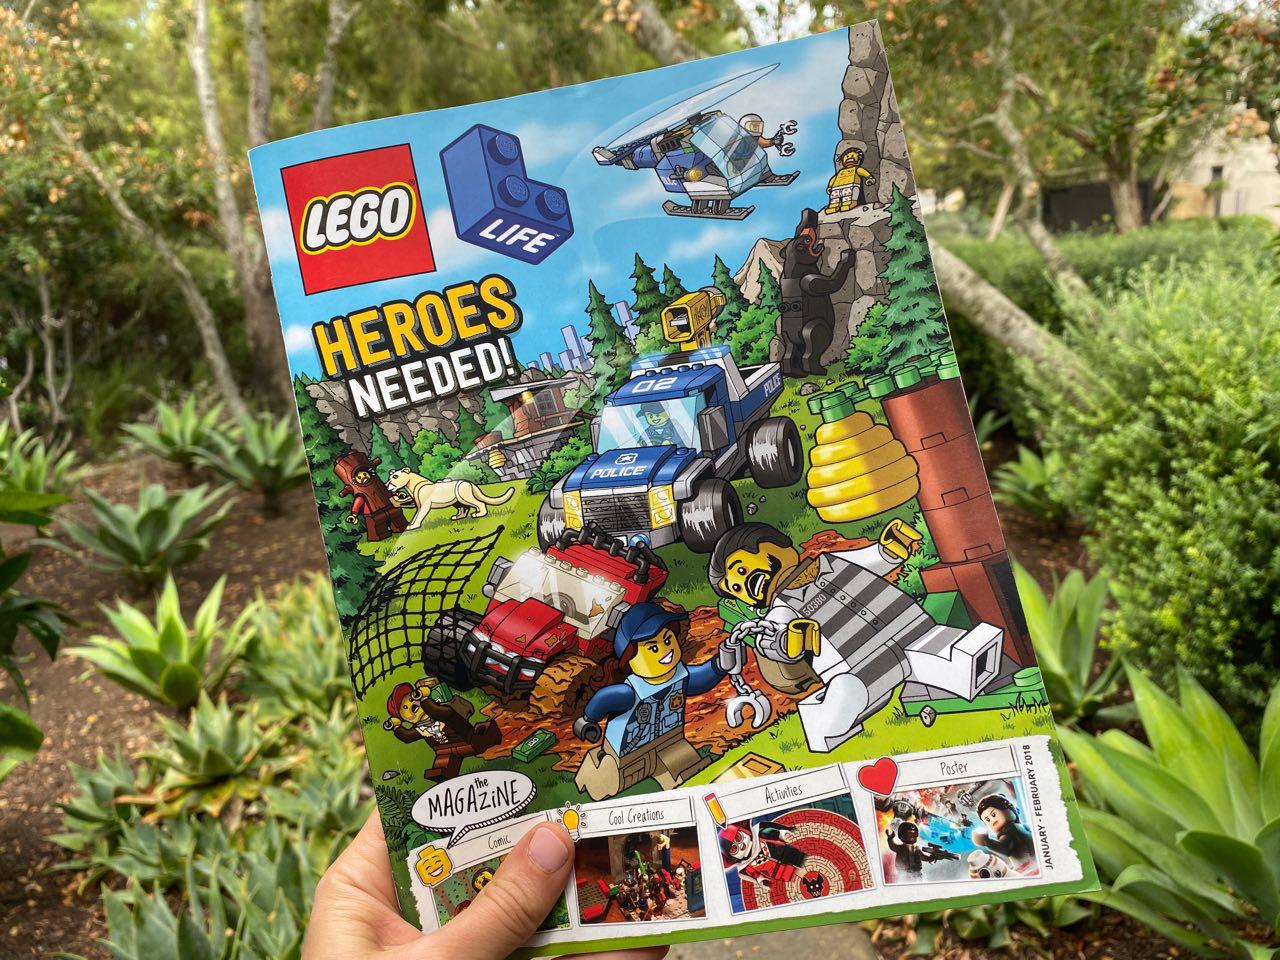 Lego Free Magazine